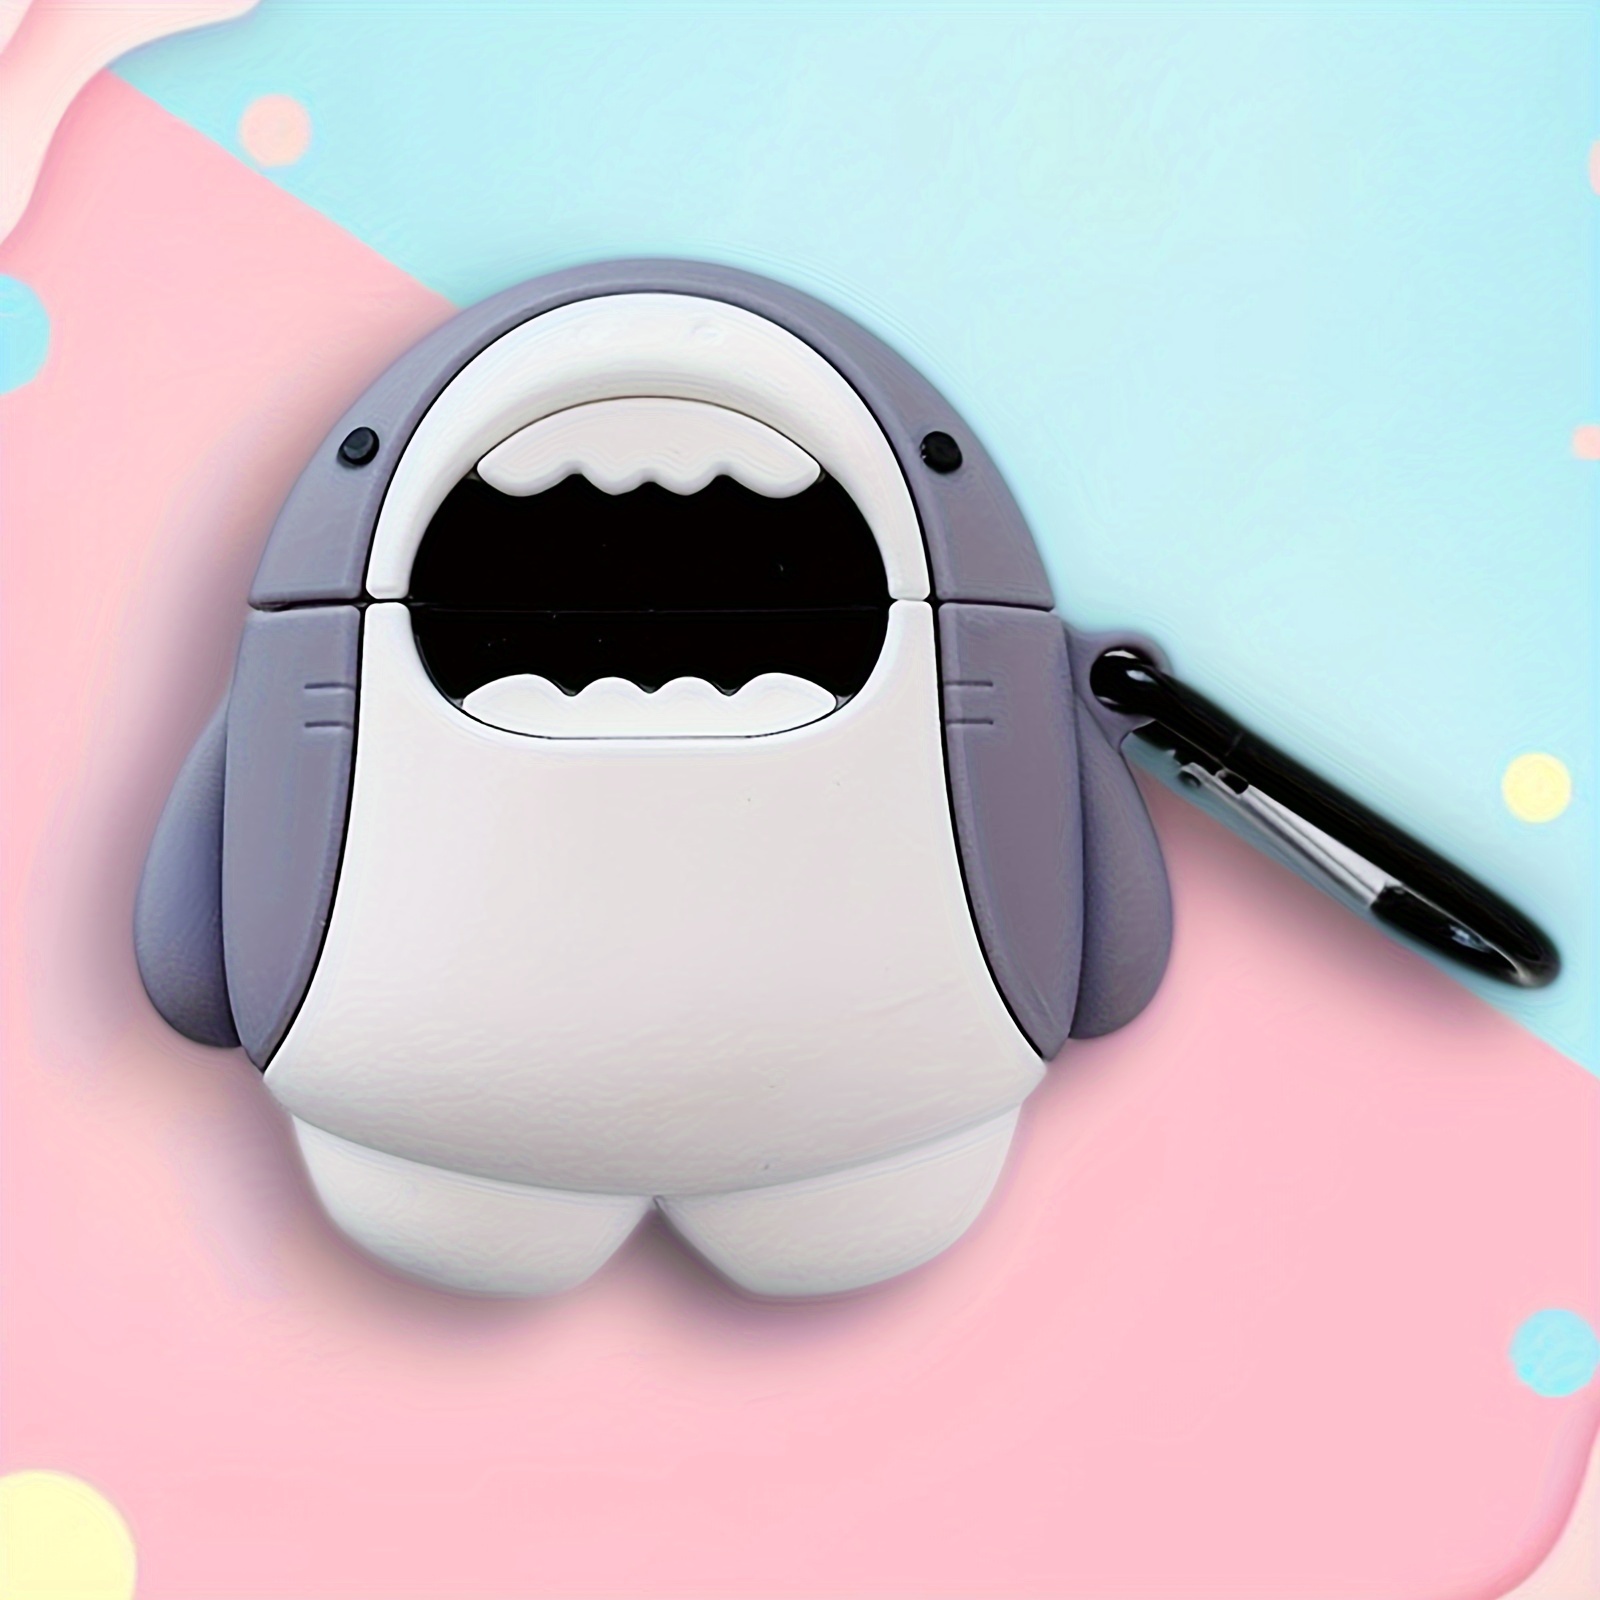 3D かわいい漫画サメ Airpod ケース かわいい漫画サメの形のソフト